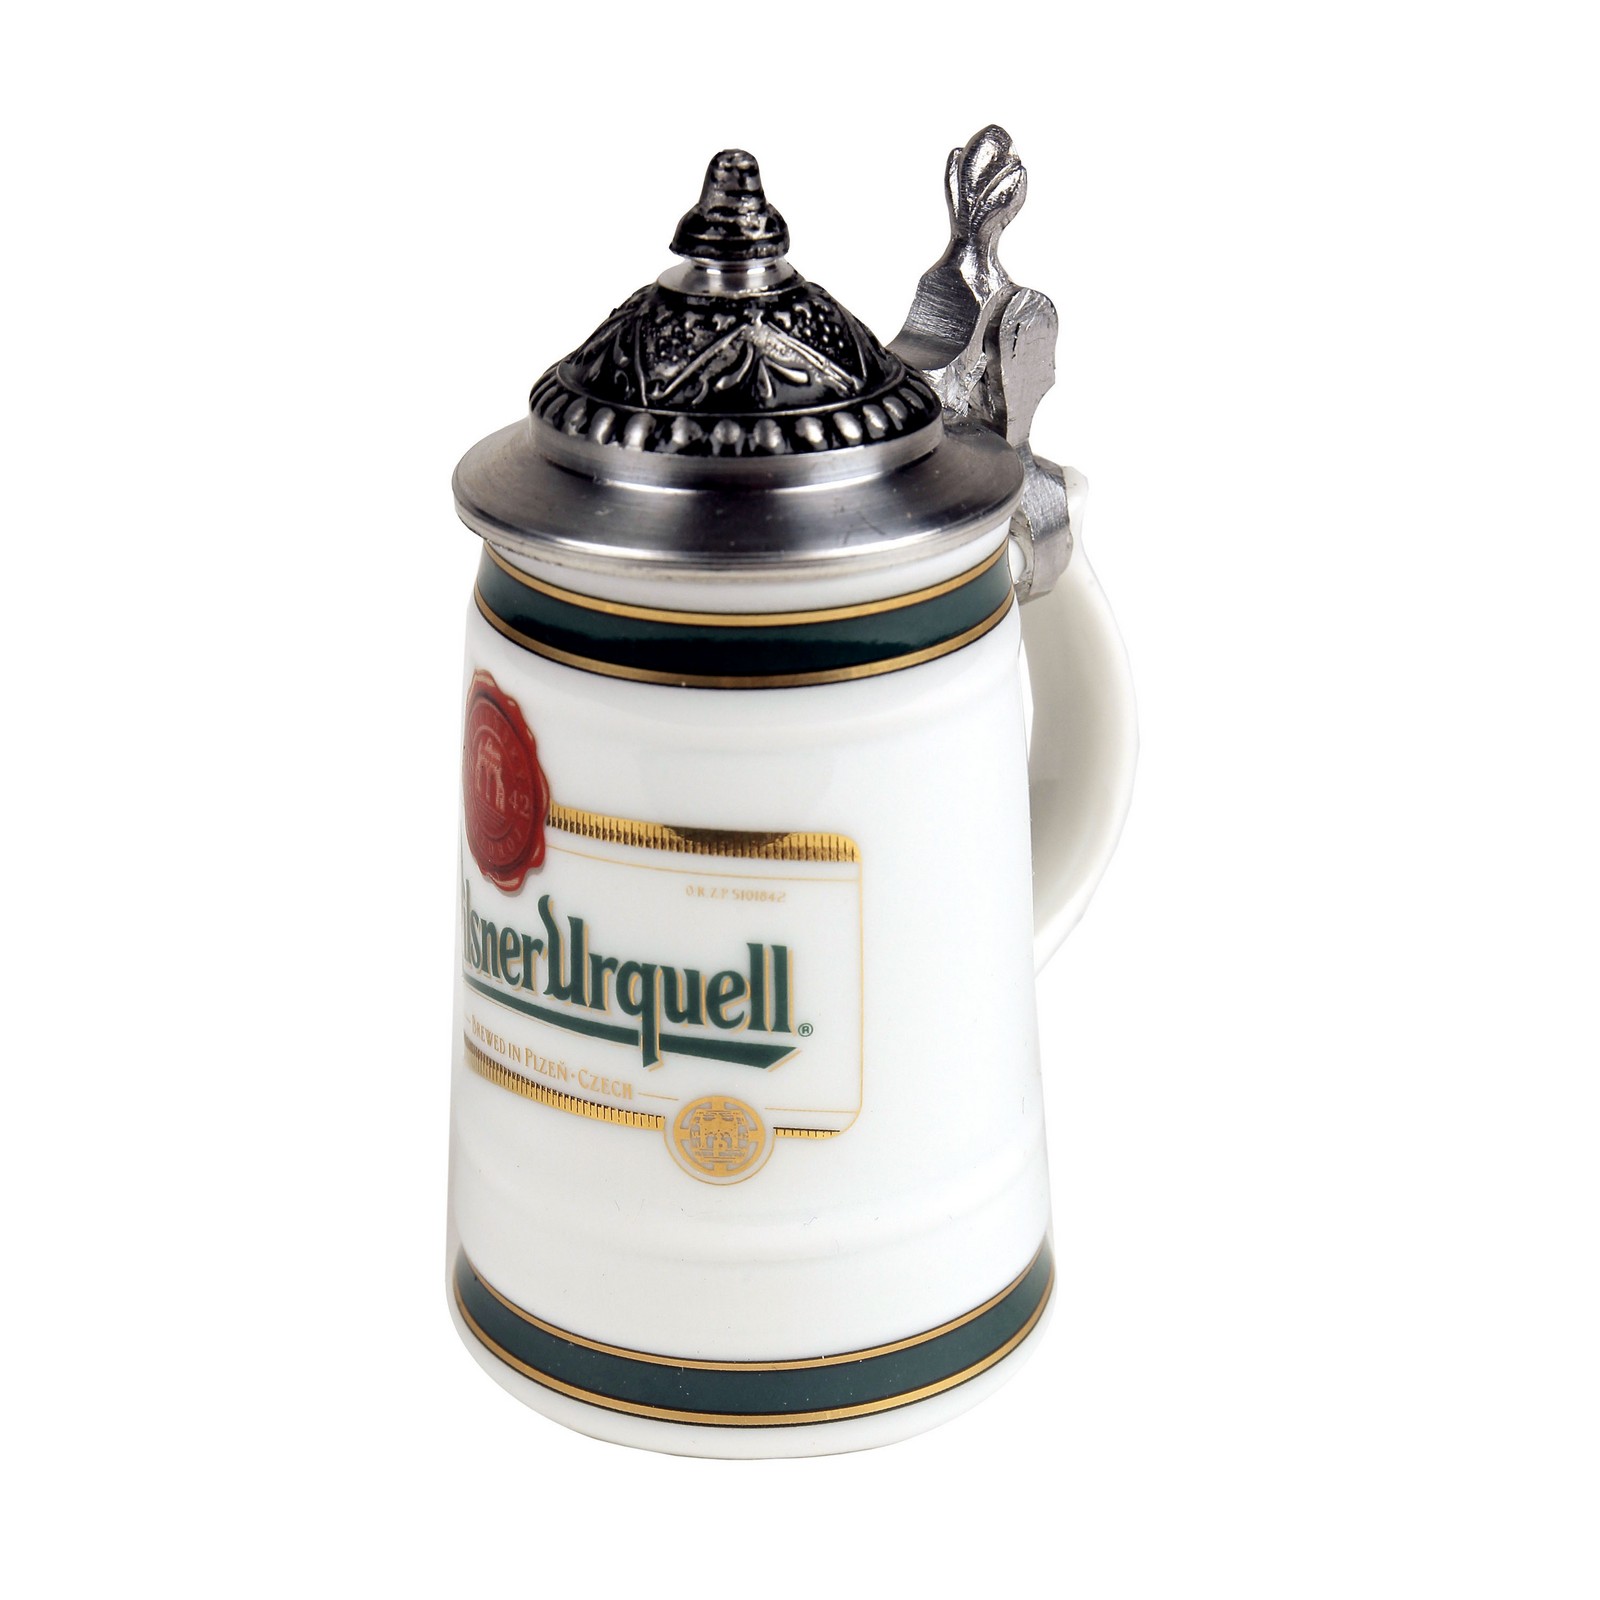 Minibierseidel Špička (Spitze) Pilsner Urquell mit Deckel